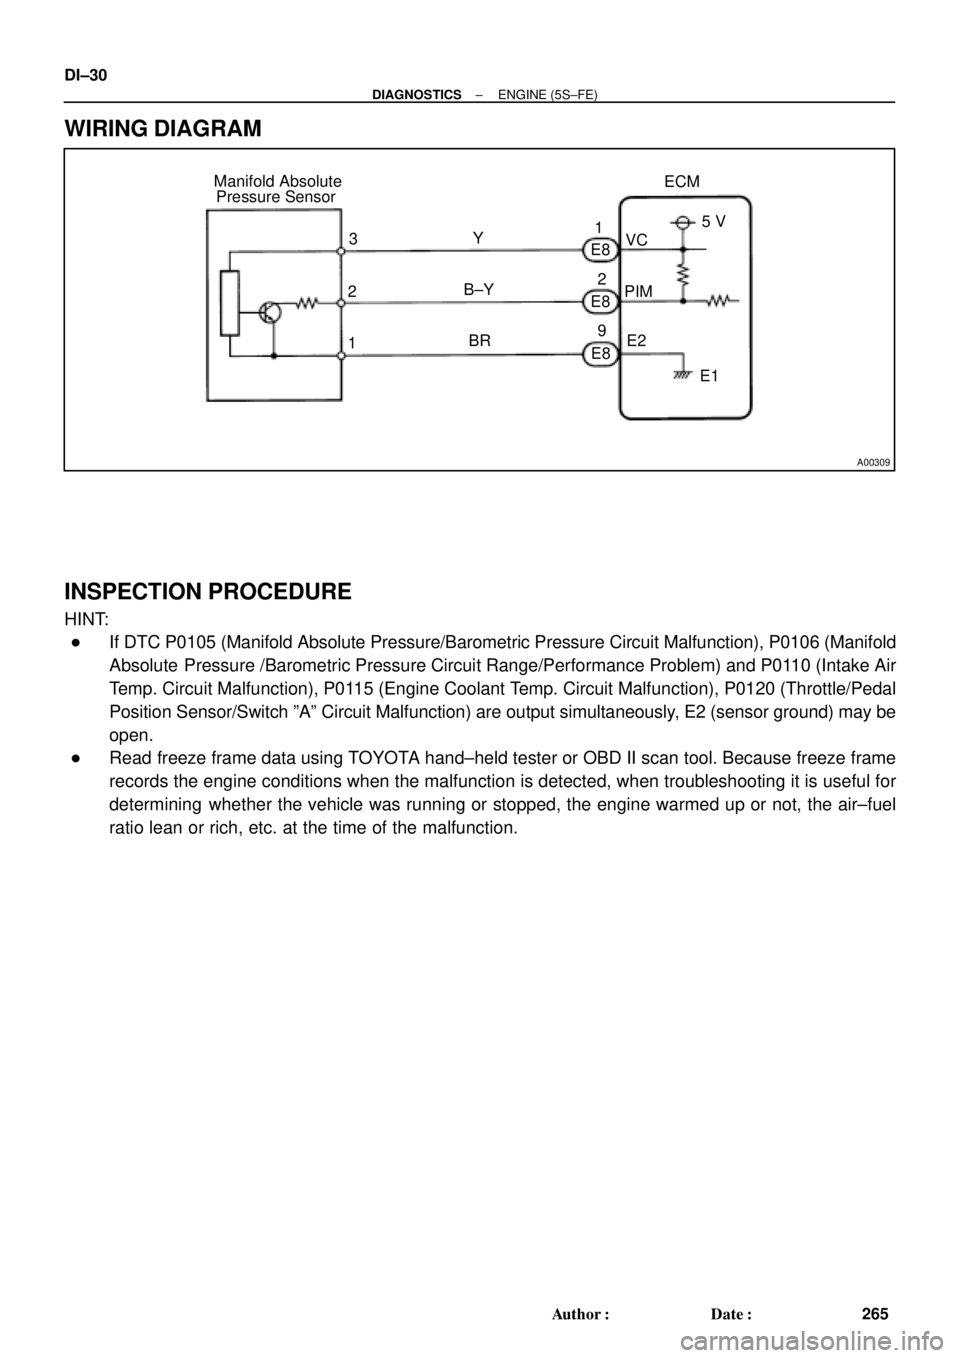 TOYOTA CAMRY 1999  Service Repair Manual A00309
ECM Manifold Absolute
Pressure Sensor
1PIMVC
E2 Y
B±Y
BRE8
E8
E8 3
25 V
E1 1
2
9 DI±30
± DIAGNOSTICSENGINE (5S±FE)
265 Author: Date:
WIRING DIAGRAM
INSPECTION PROCEDURE
HINT:
If DTC P010